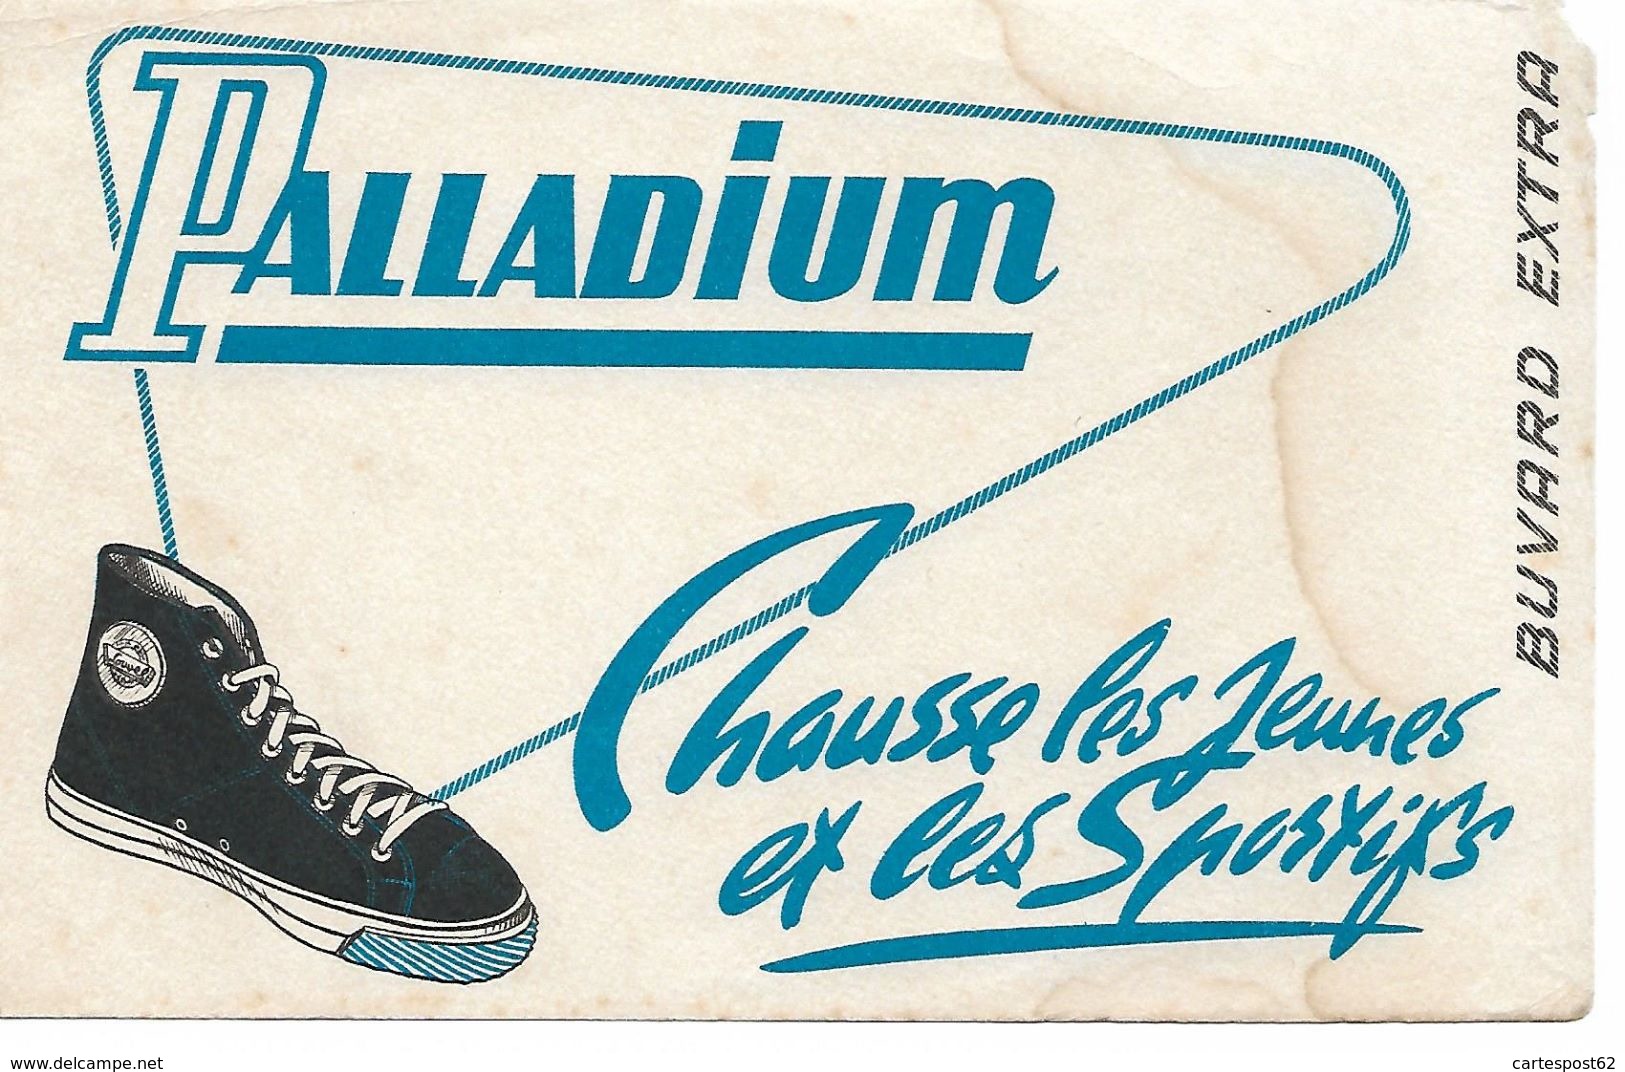 Buvard Palladium Chausse Les Jeunes Et Les Sportifs. - Chaussures